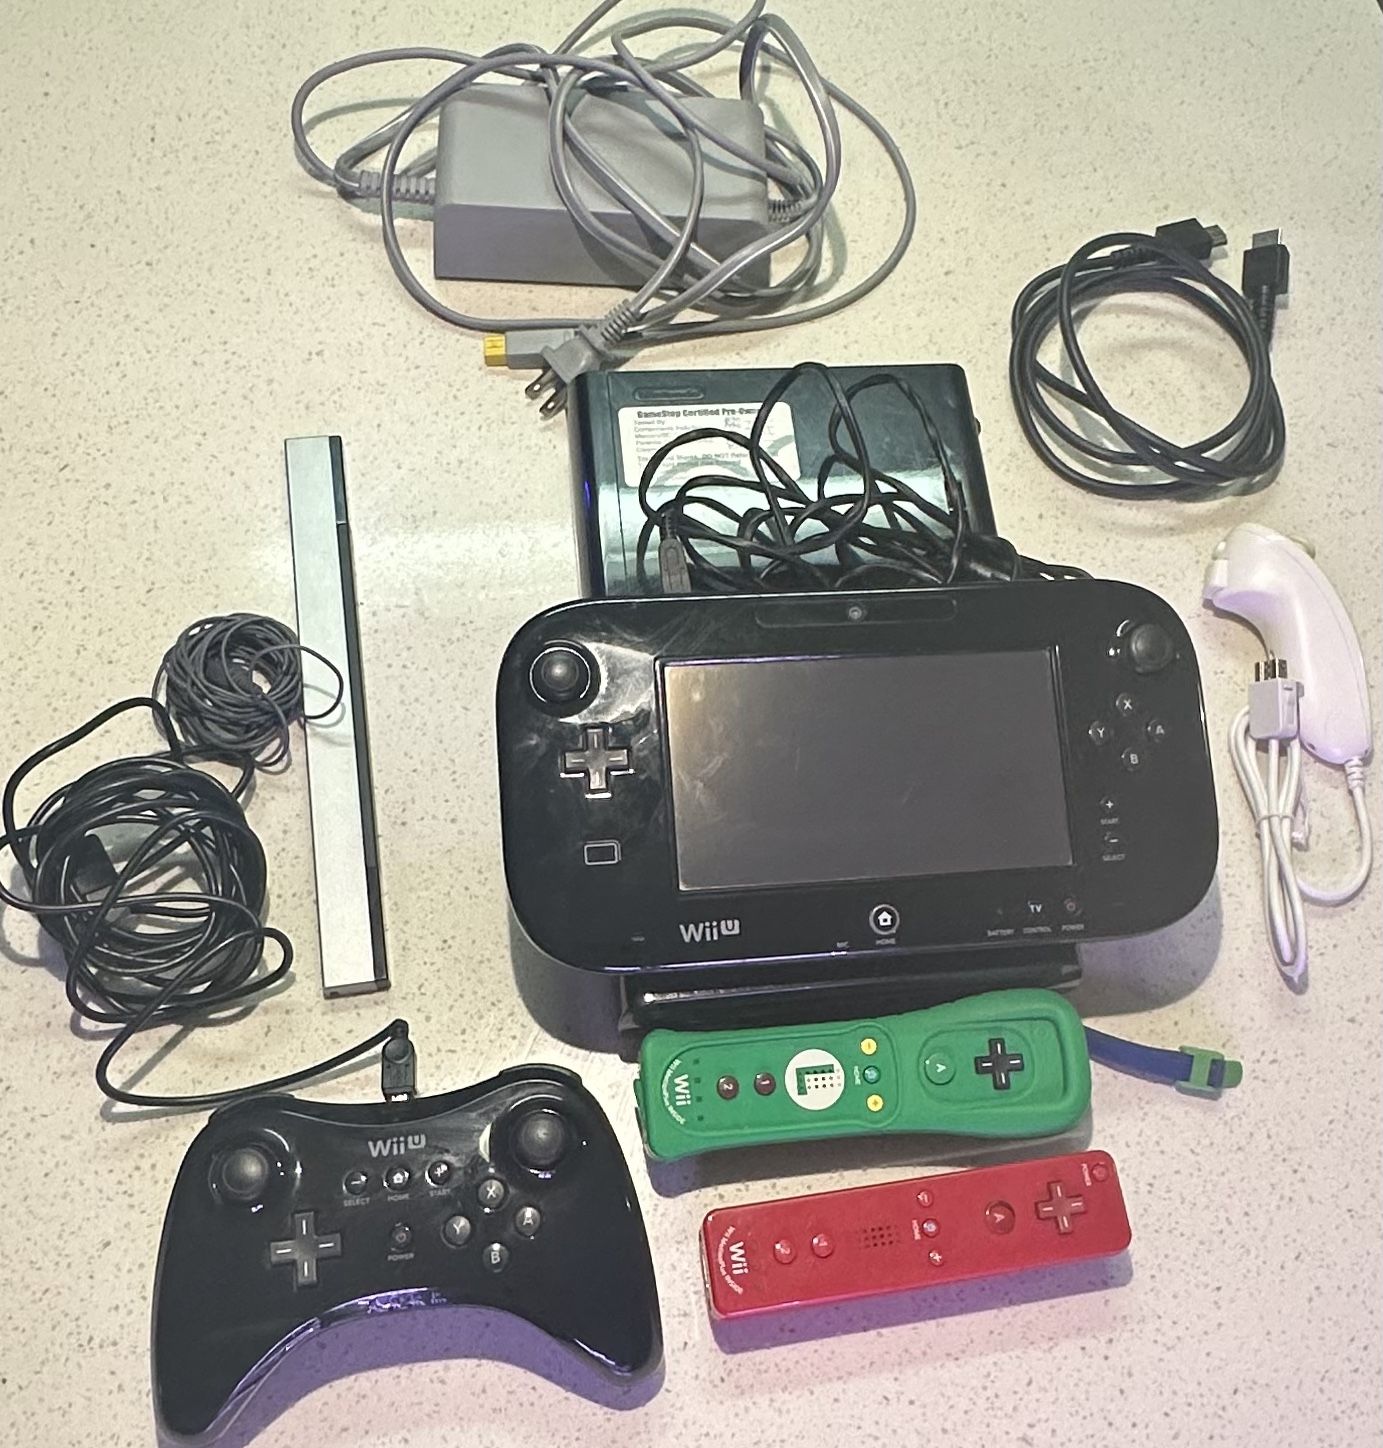 Wii U and accessories 